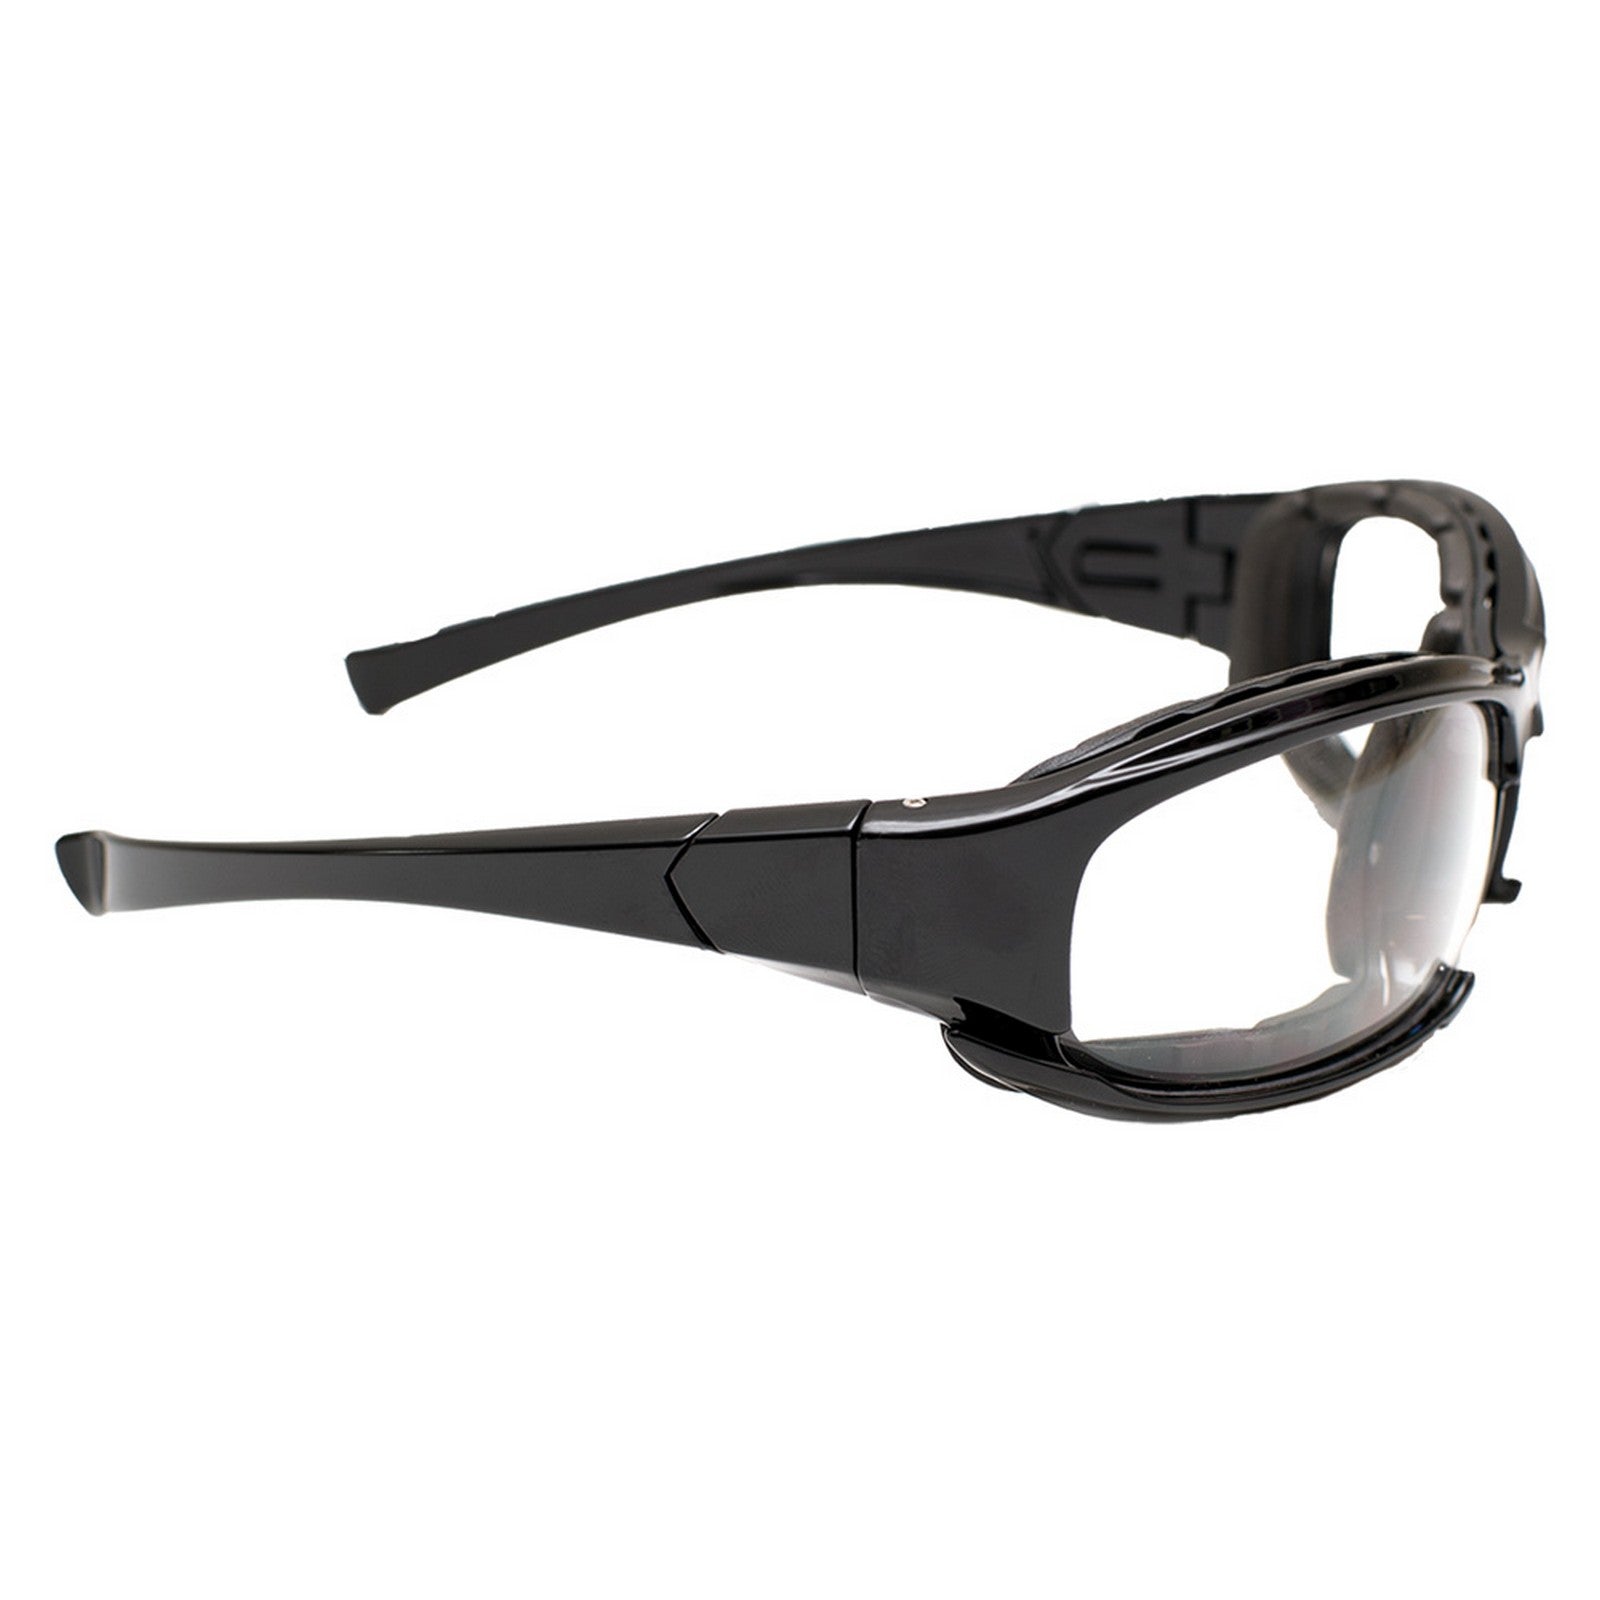 occhiali da lavoro 'indro clear' art.indro tr aw - lente incolore cod:ferx.1065320nlm